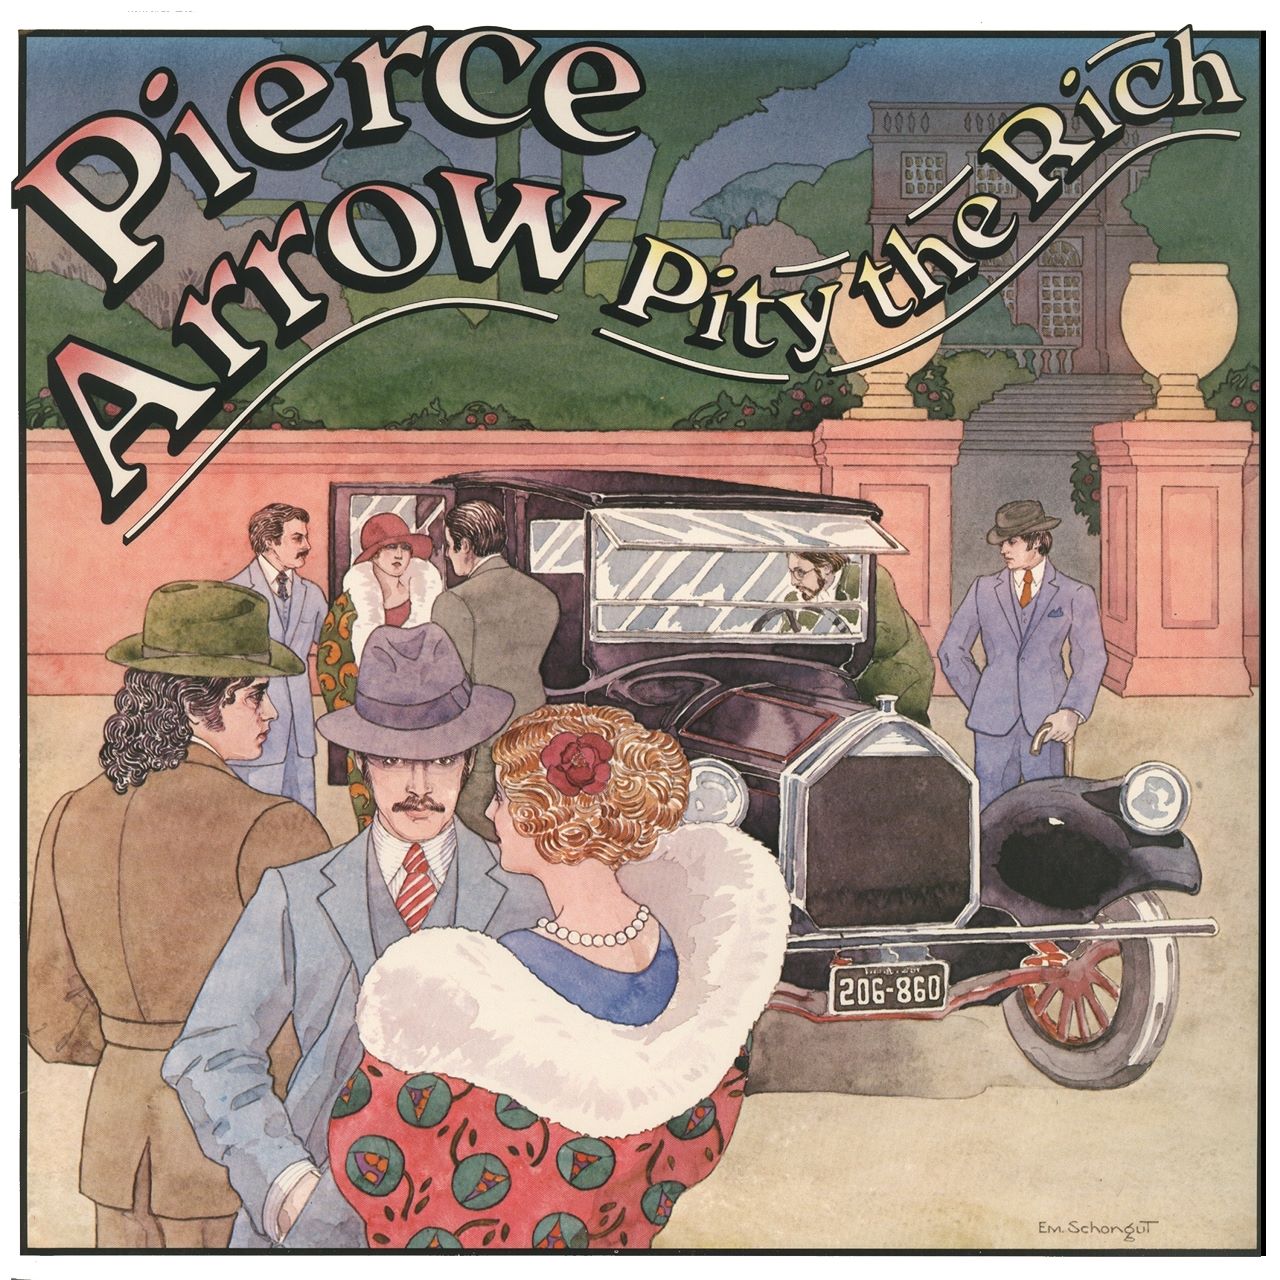 Pierce Arrow - Pity The Rich cover album